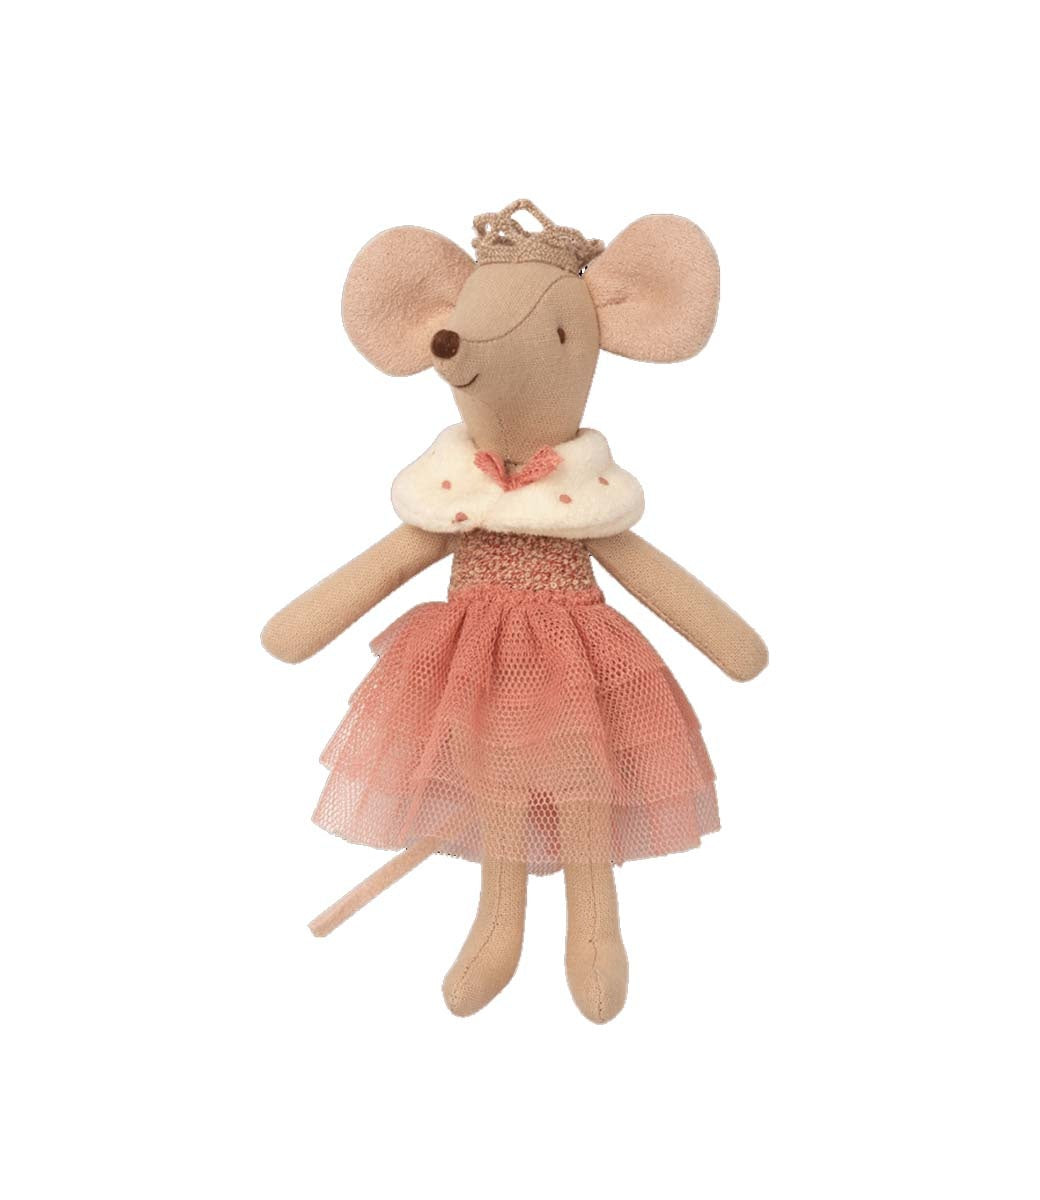 Princess mouse - Big sister